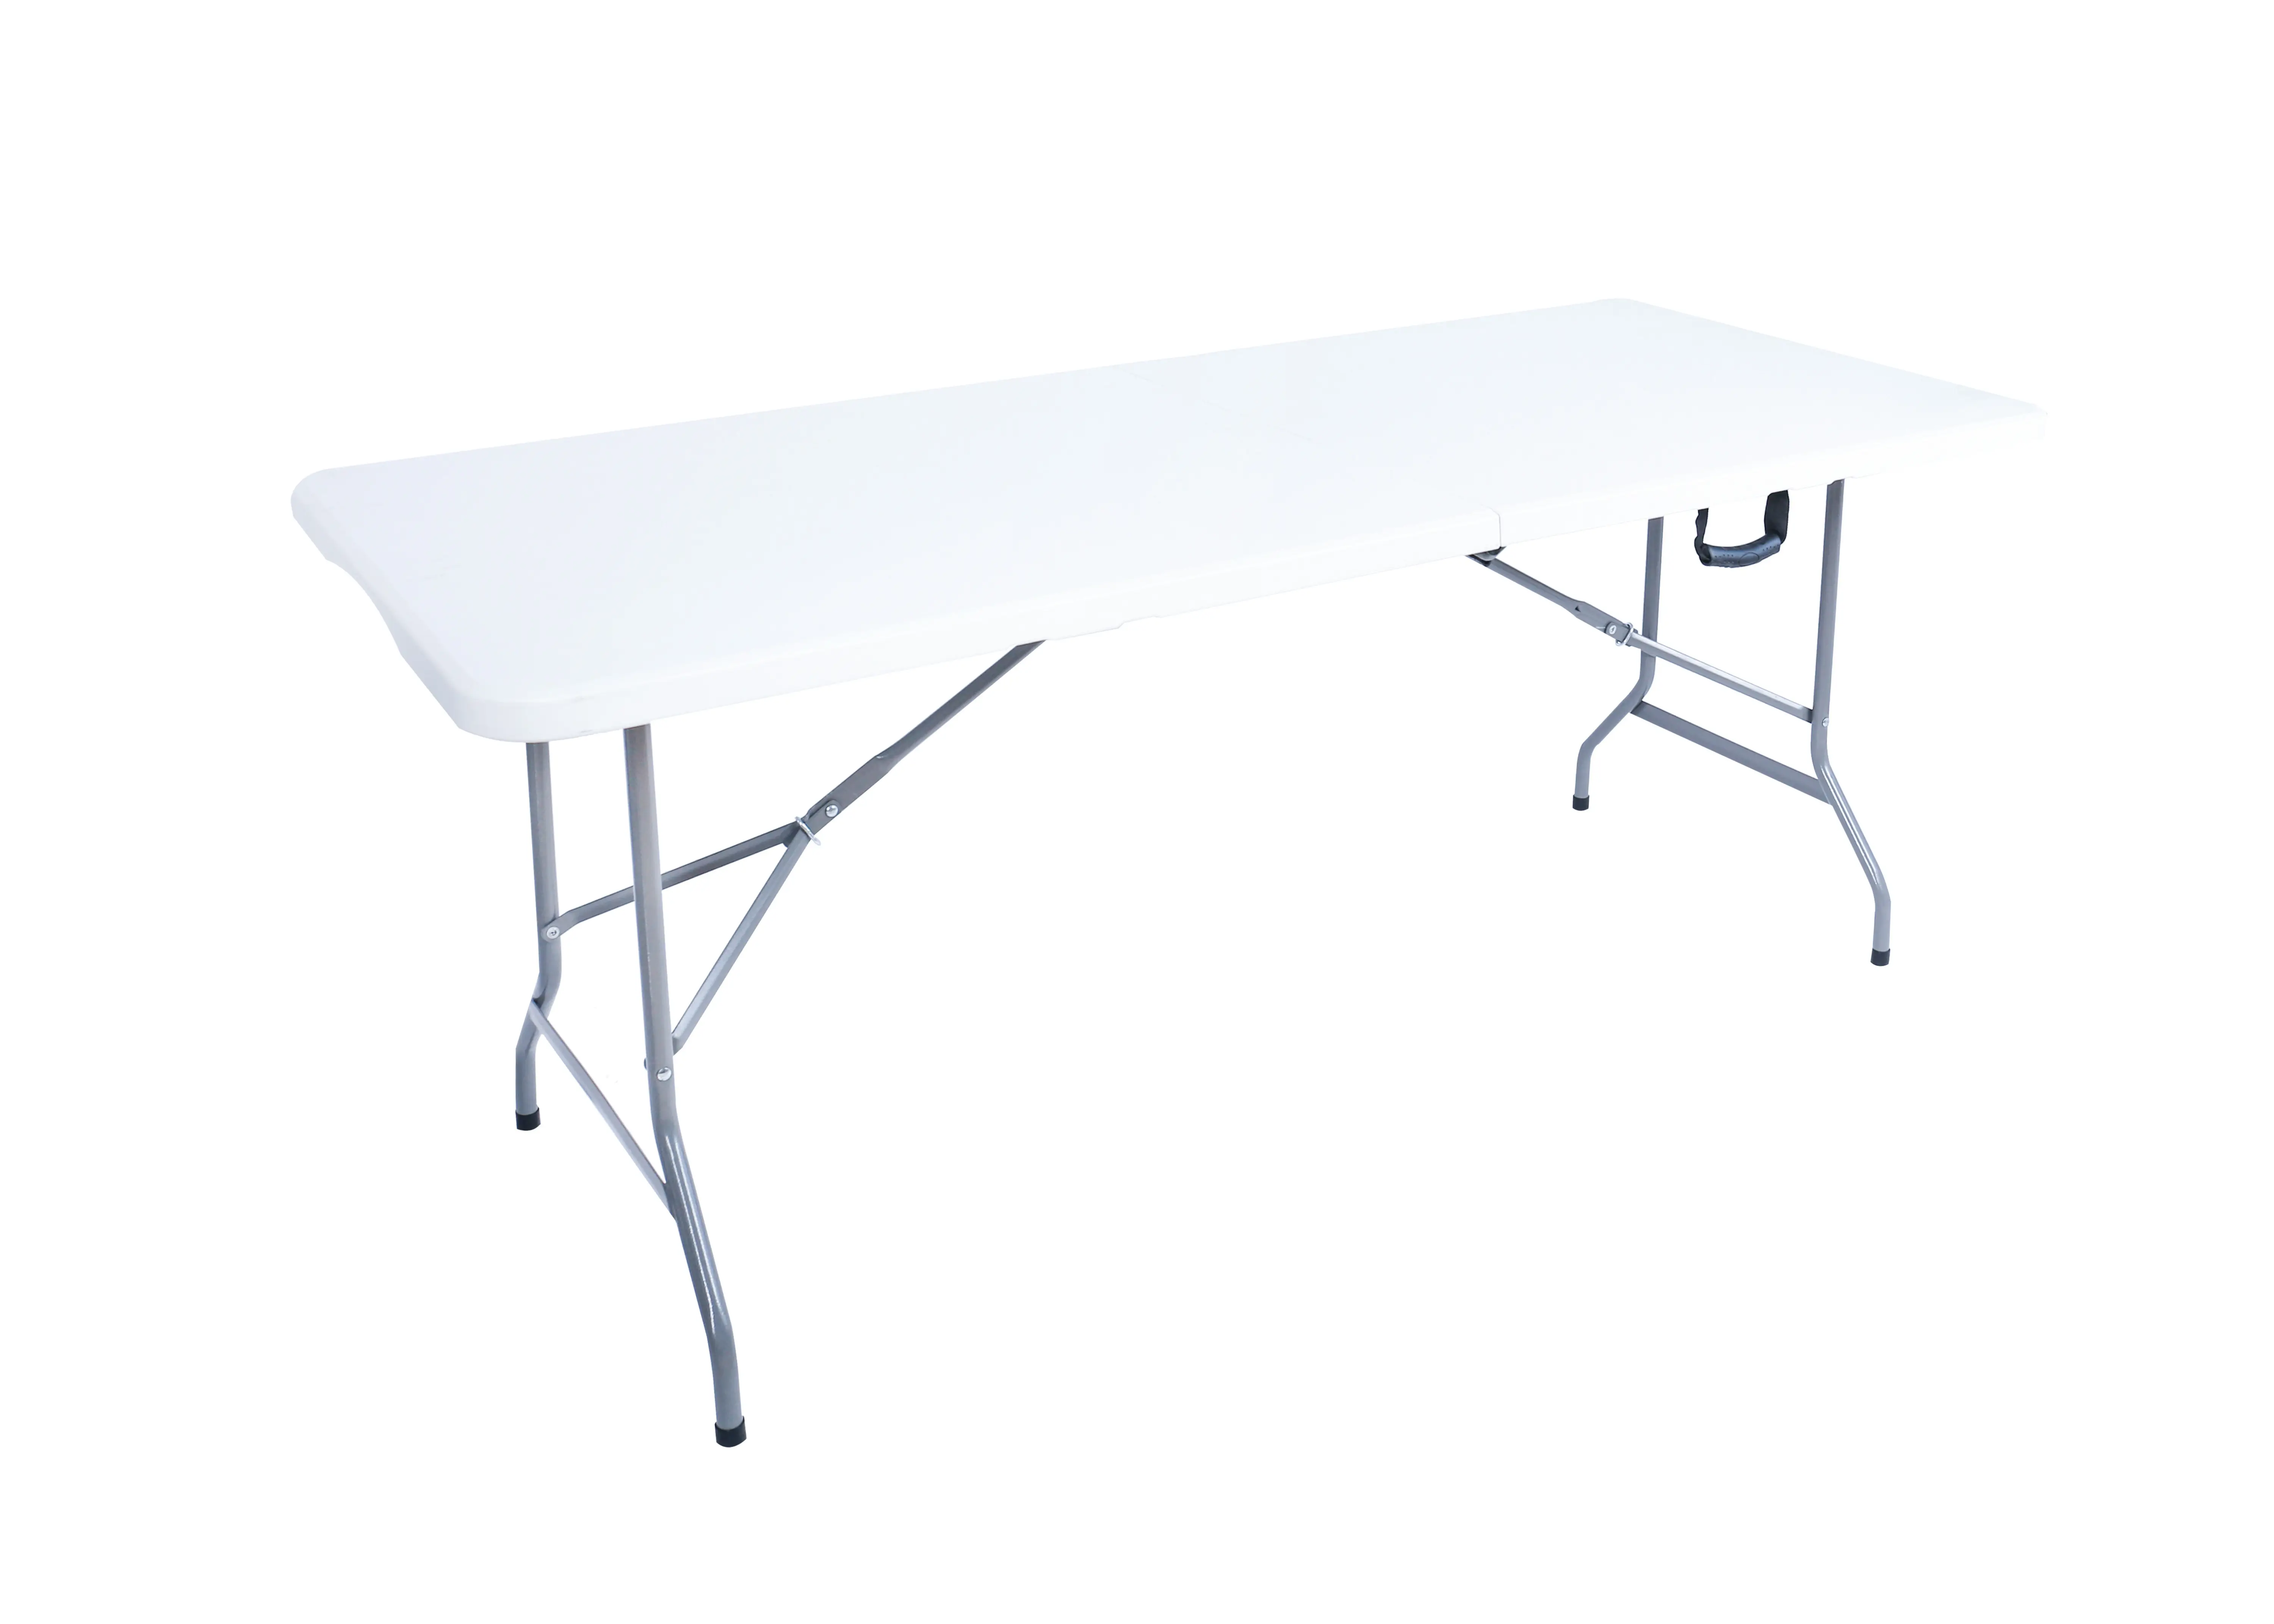 6 '접이식 테이블 휴대용 플라스틱 옥외 피크닉 파티 캠프 테이블